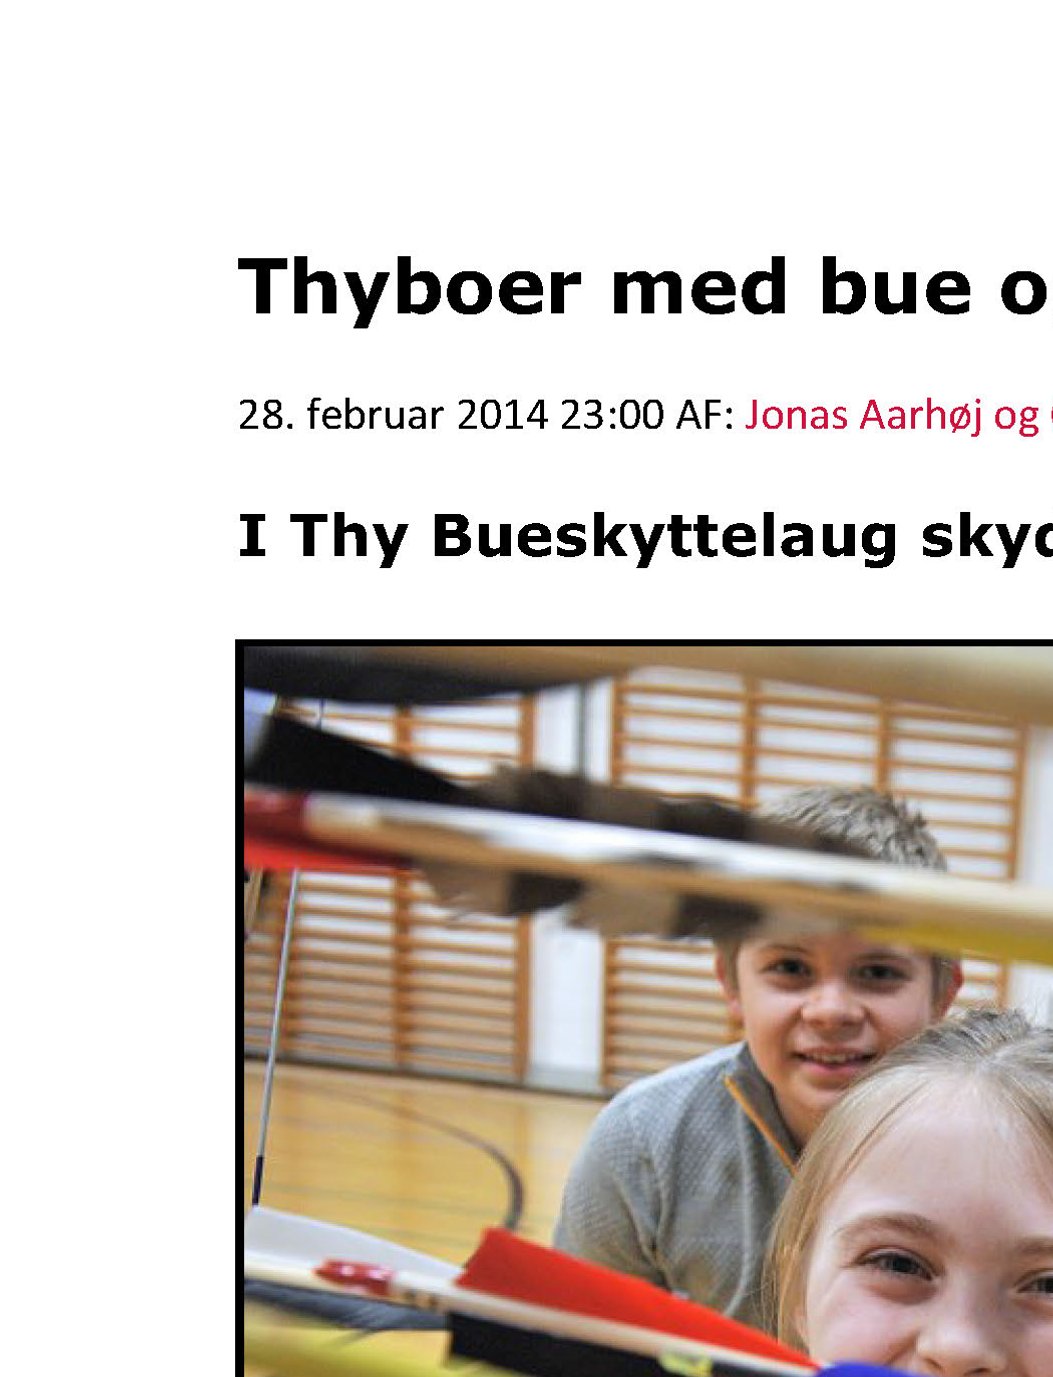 Thyboer med bue og pil – i Thy Bueskyttelaug skyder man efter ”ansigtet” – del 1 – Nordjyske online d. 28/2-2014